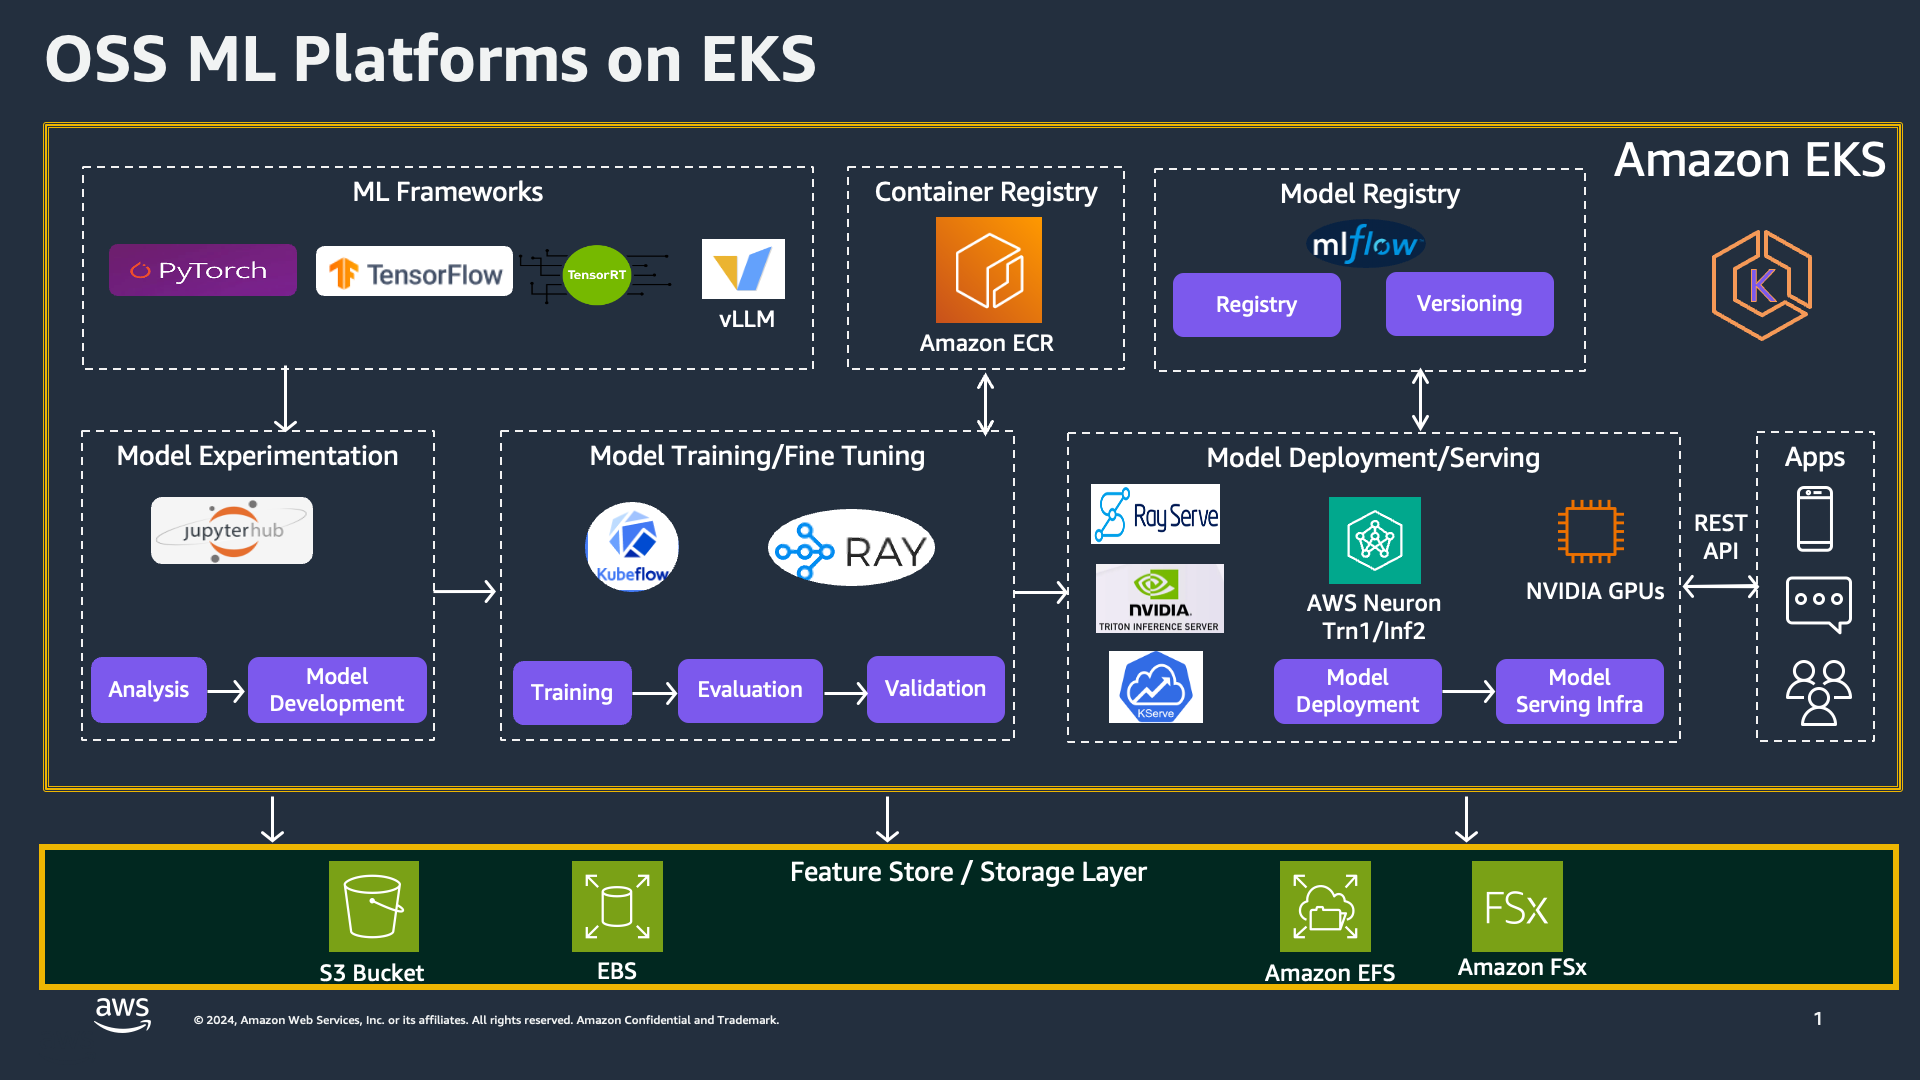 OSS ML Platforms on EKS